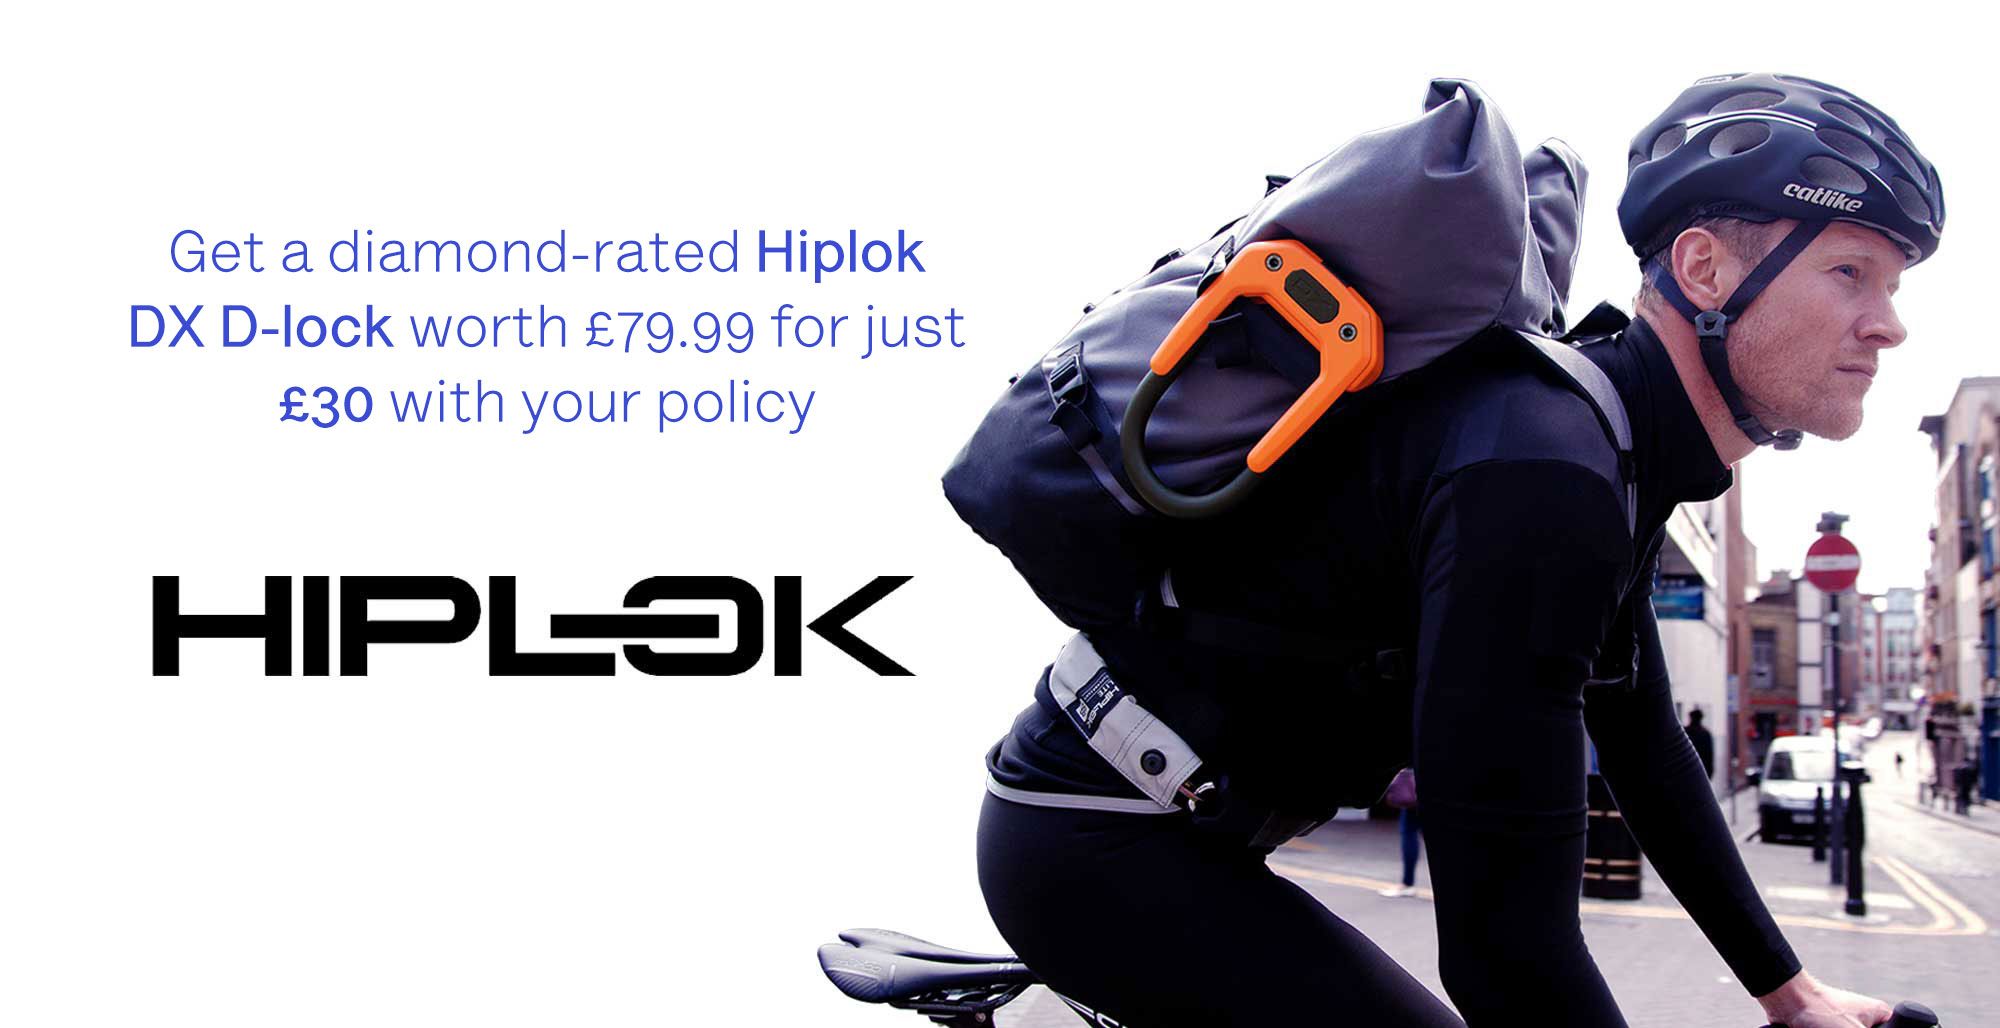 Pedalsure Hiplok offer